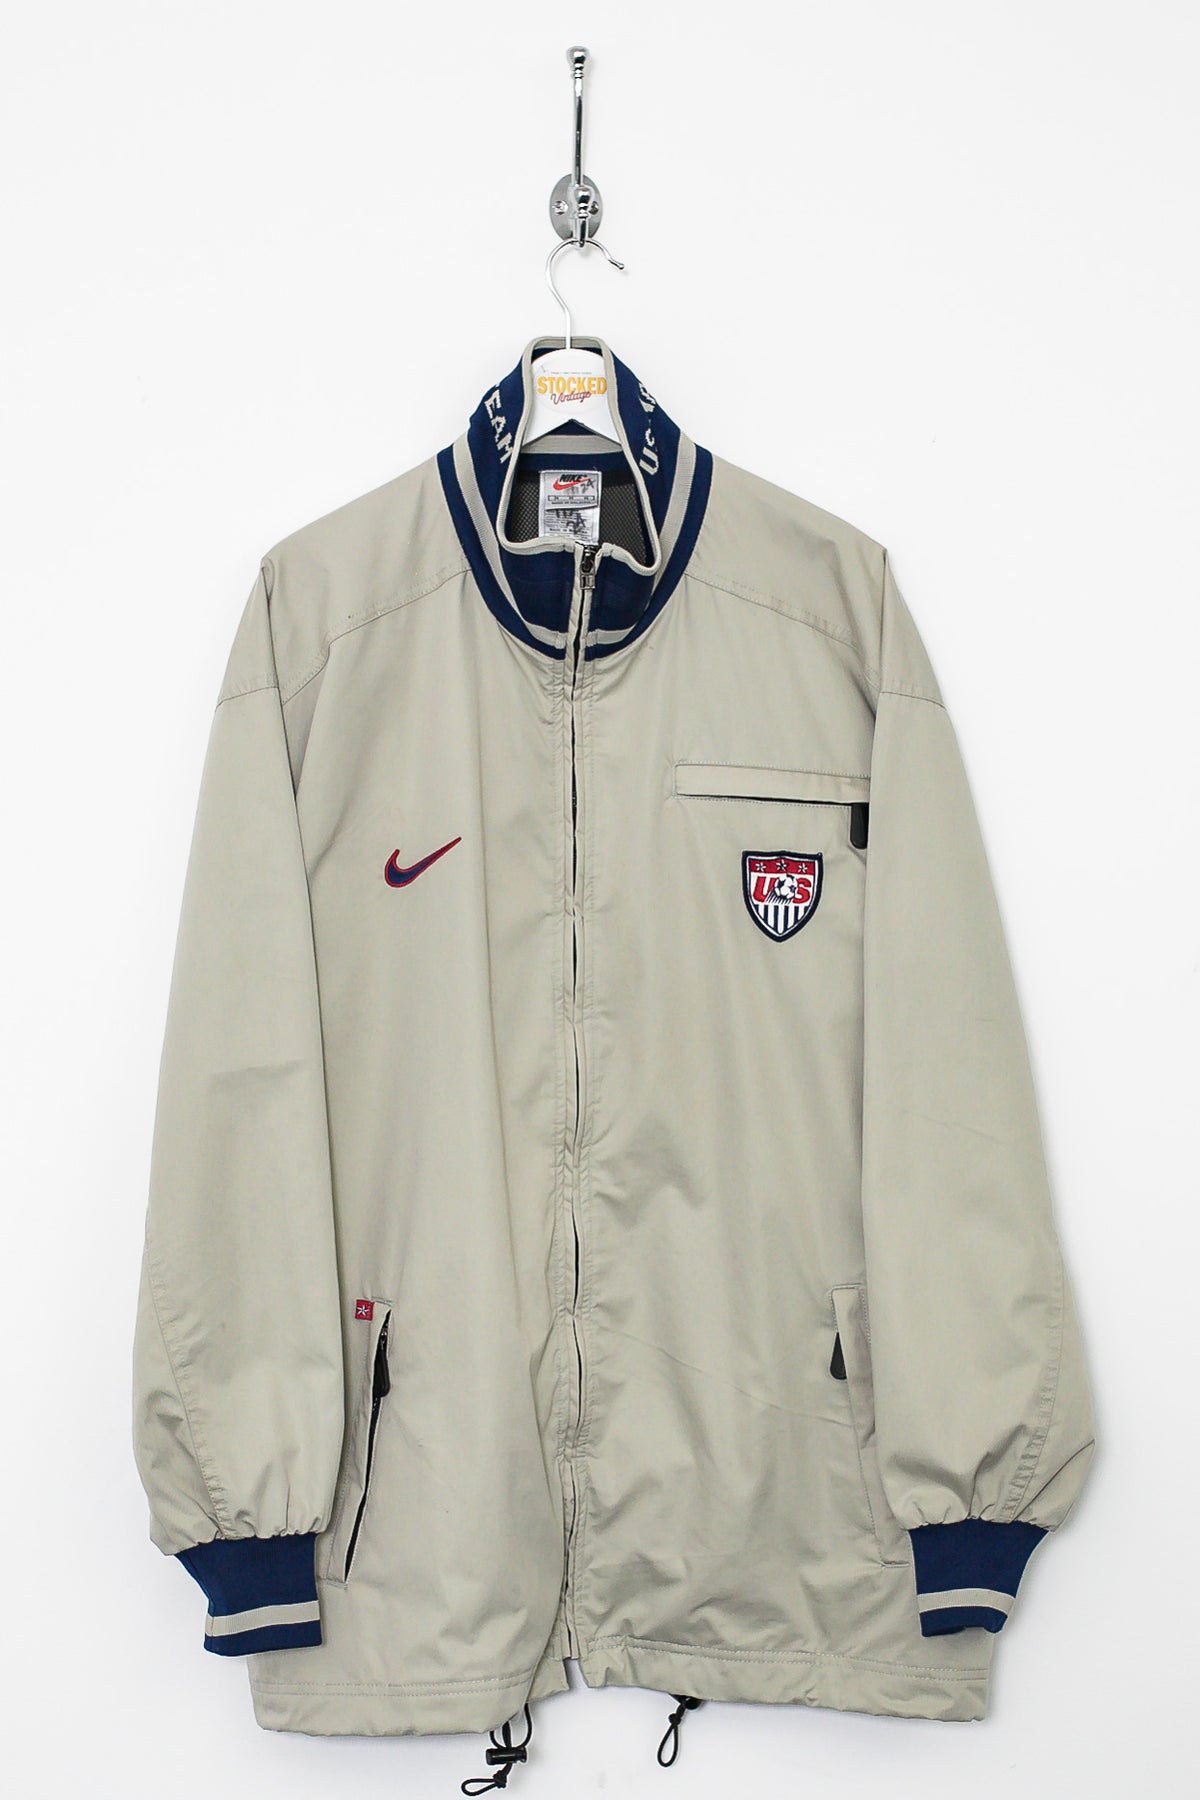 90s Nike USA Football Jacket (M)